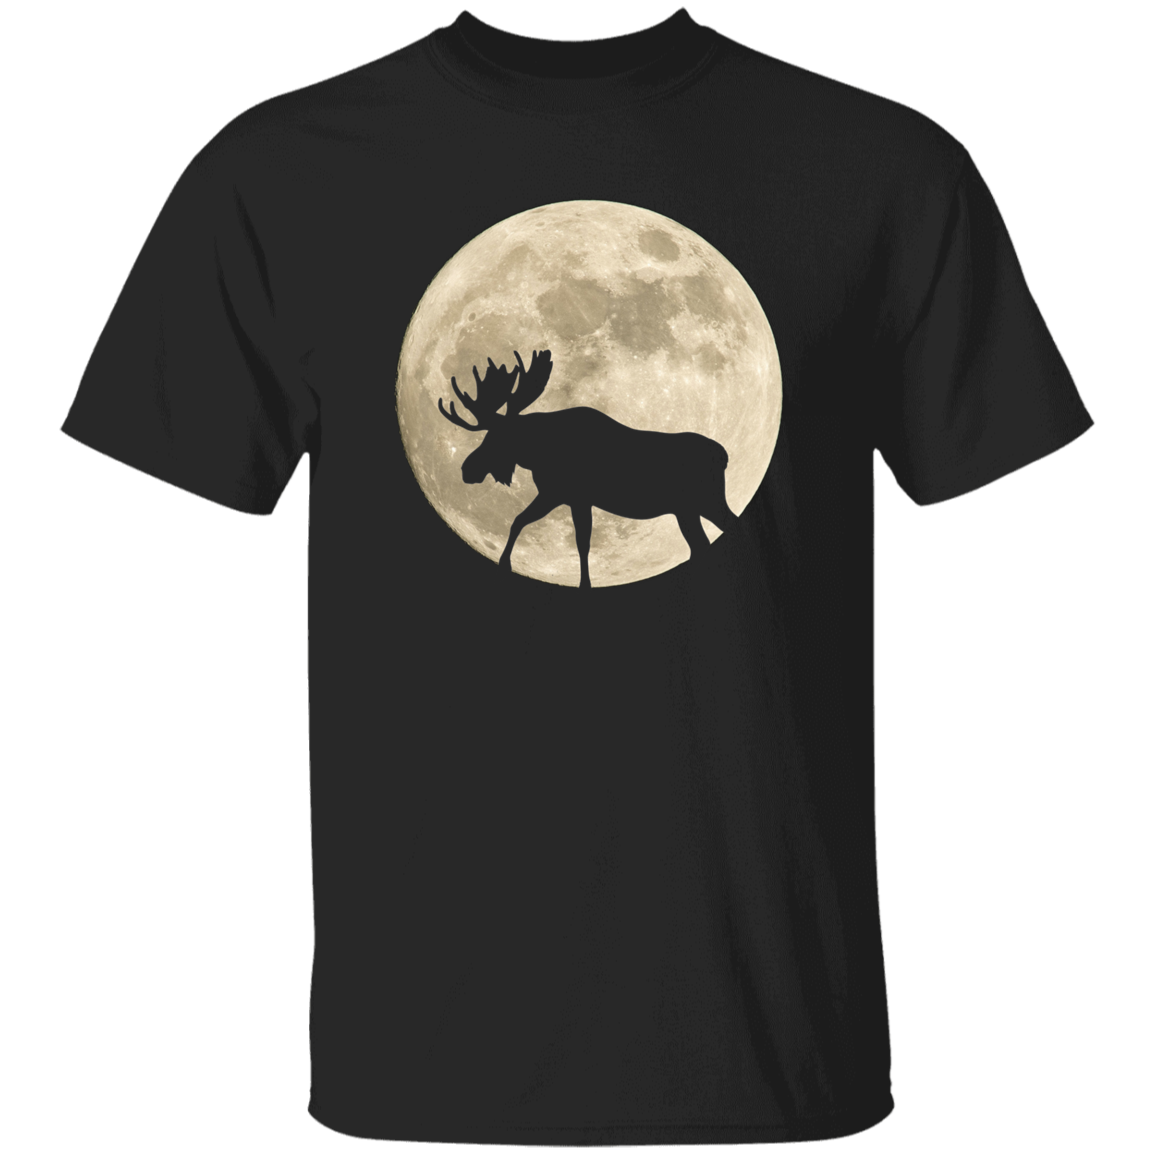 Moose Moon - T-shirts, Hoodies and Sweatshirts